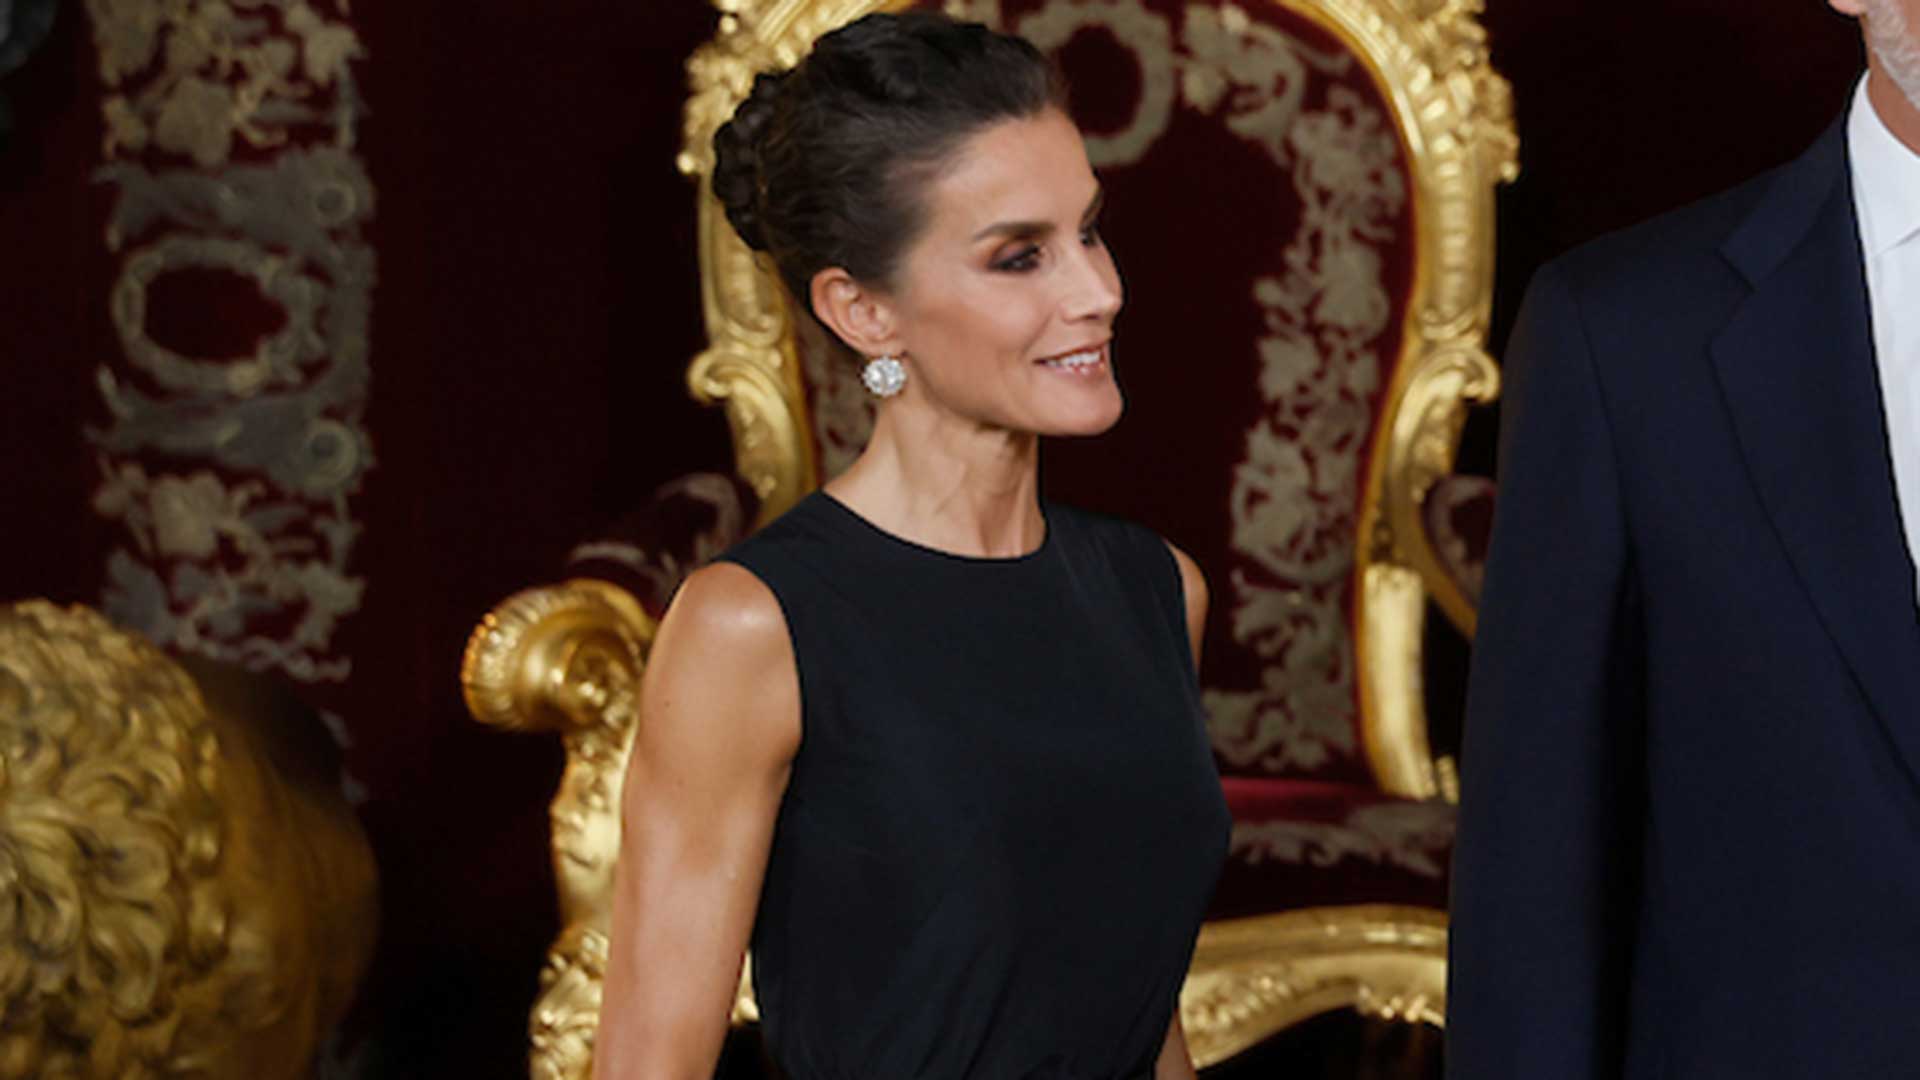 La Reina Letizia recicla su look más impactante para su cena en el Palacio Real